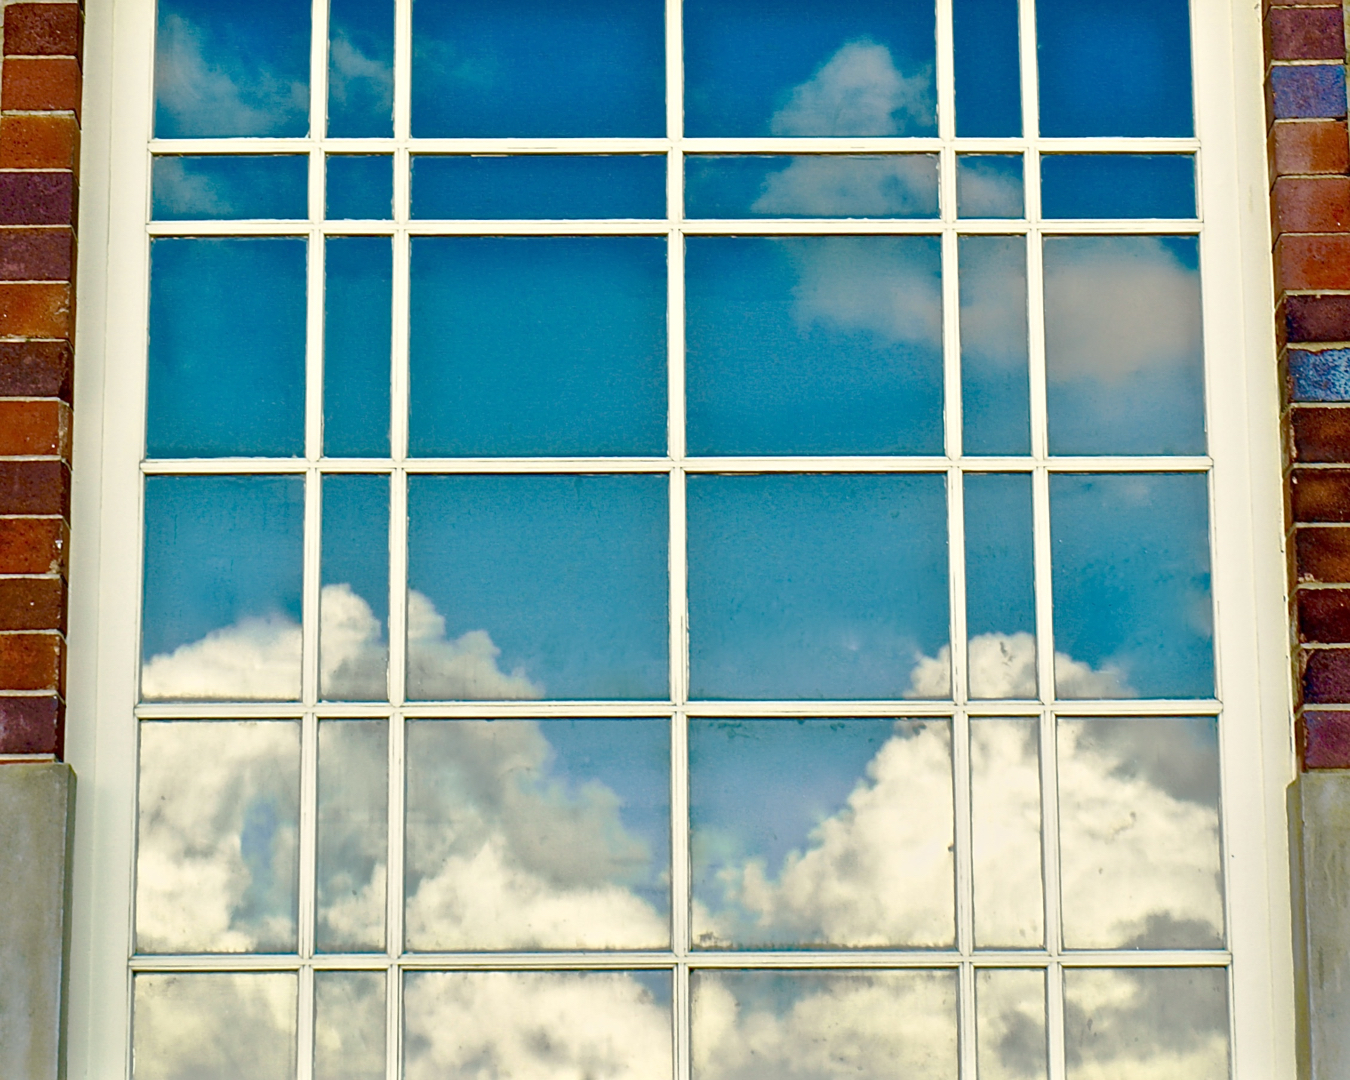 Digital Projected Open B Grade Clouds in the Window Wanda Bowen Reflections, July 2018